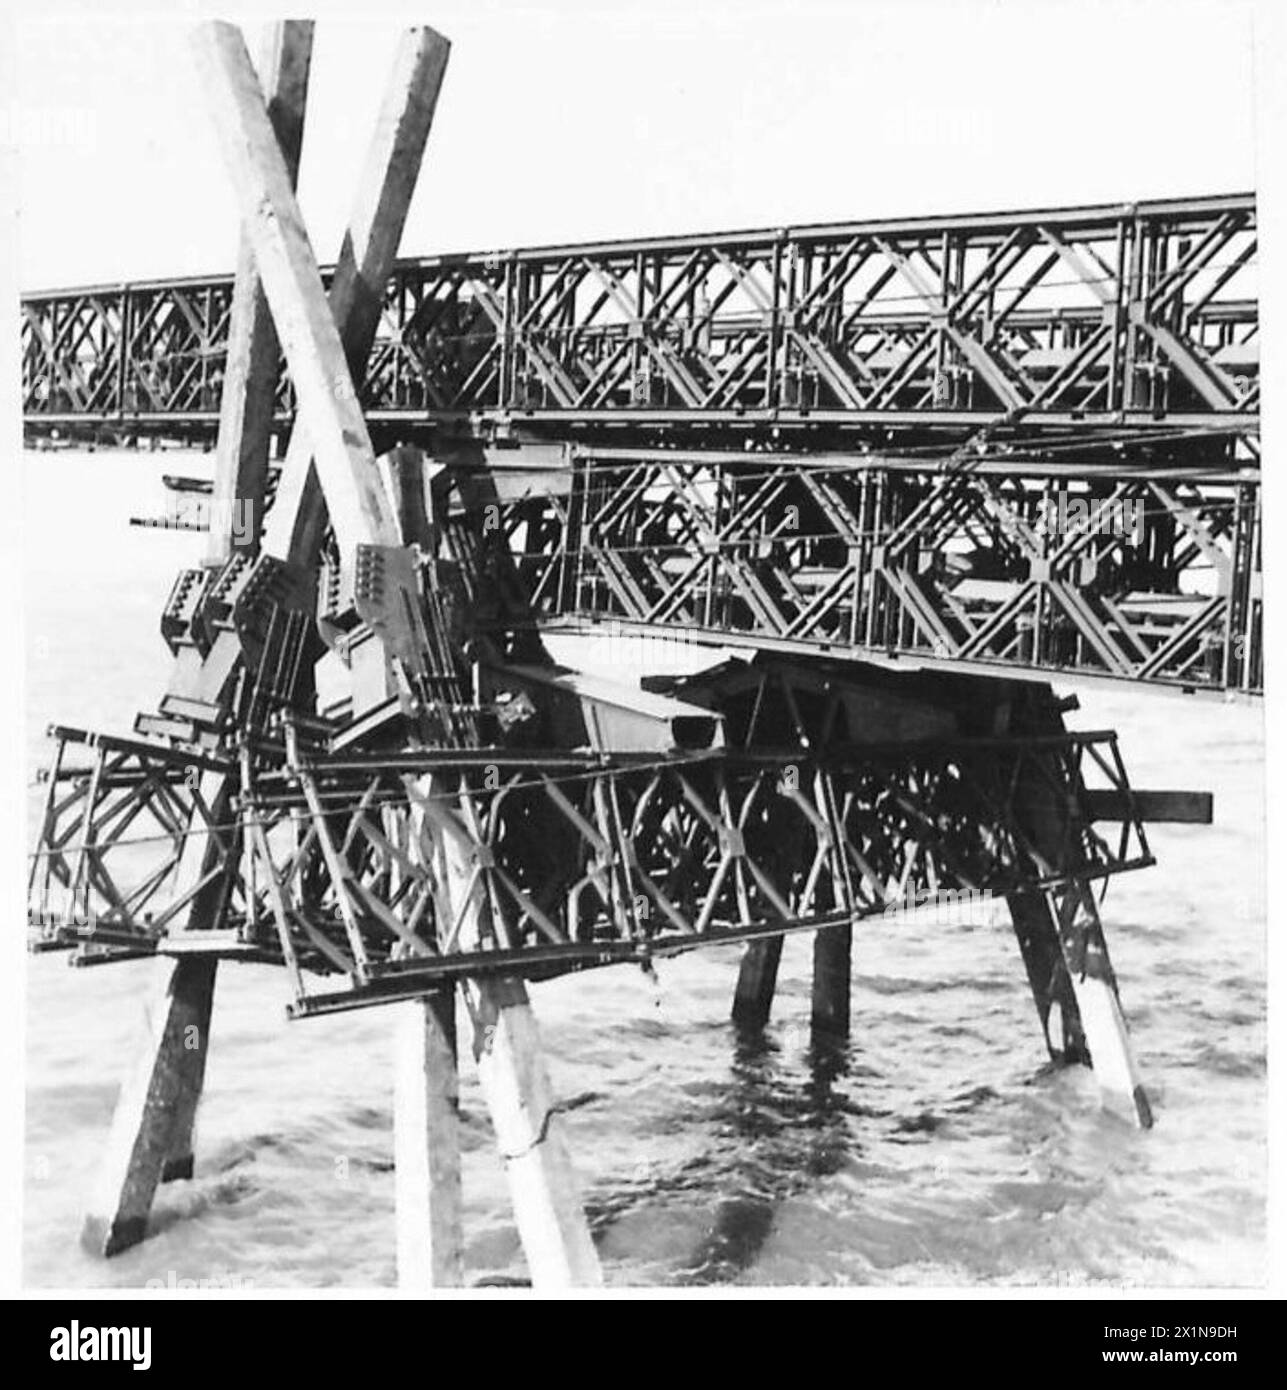 INCARICO SPECIALE PER TN. 5 - fotografie scattate in alto mare che mostrano la grande zattera in uso durante la costruzione di un ponte Bailey, e il molo 'V' Trestling in alto mare, British Army Foto Stock